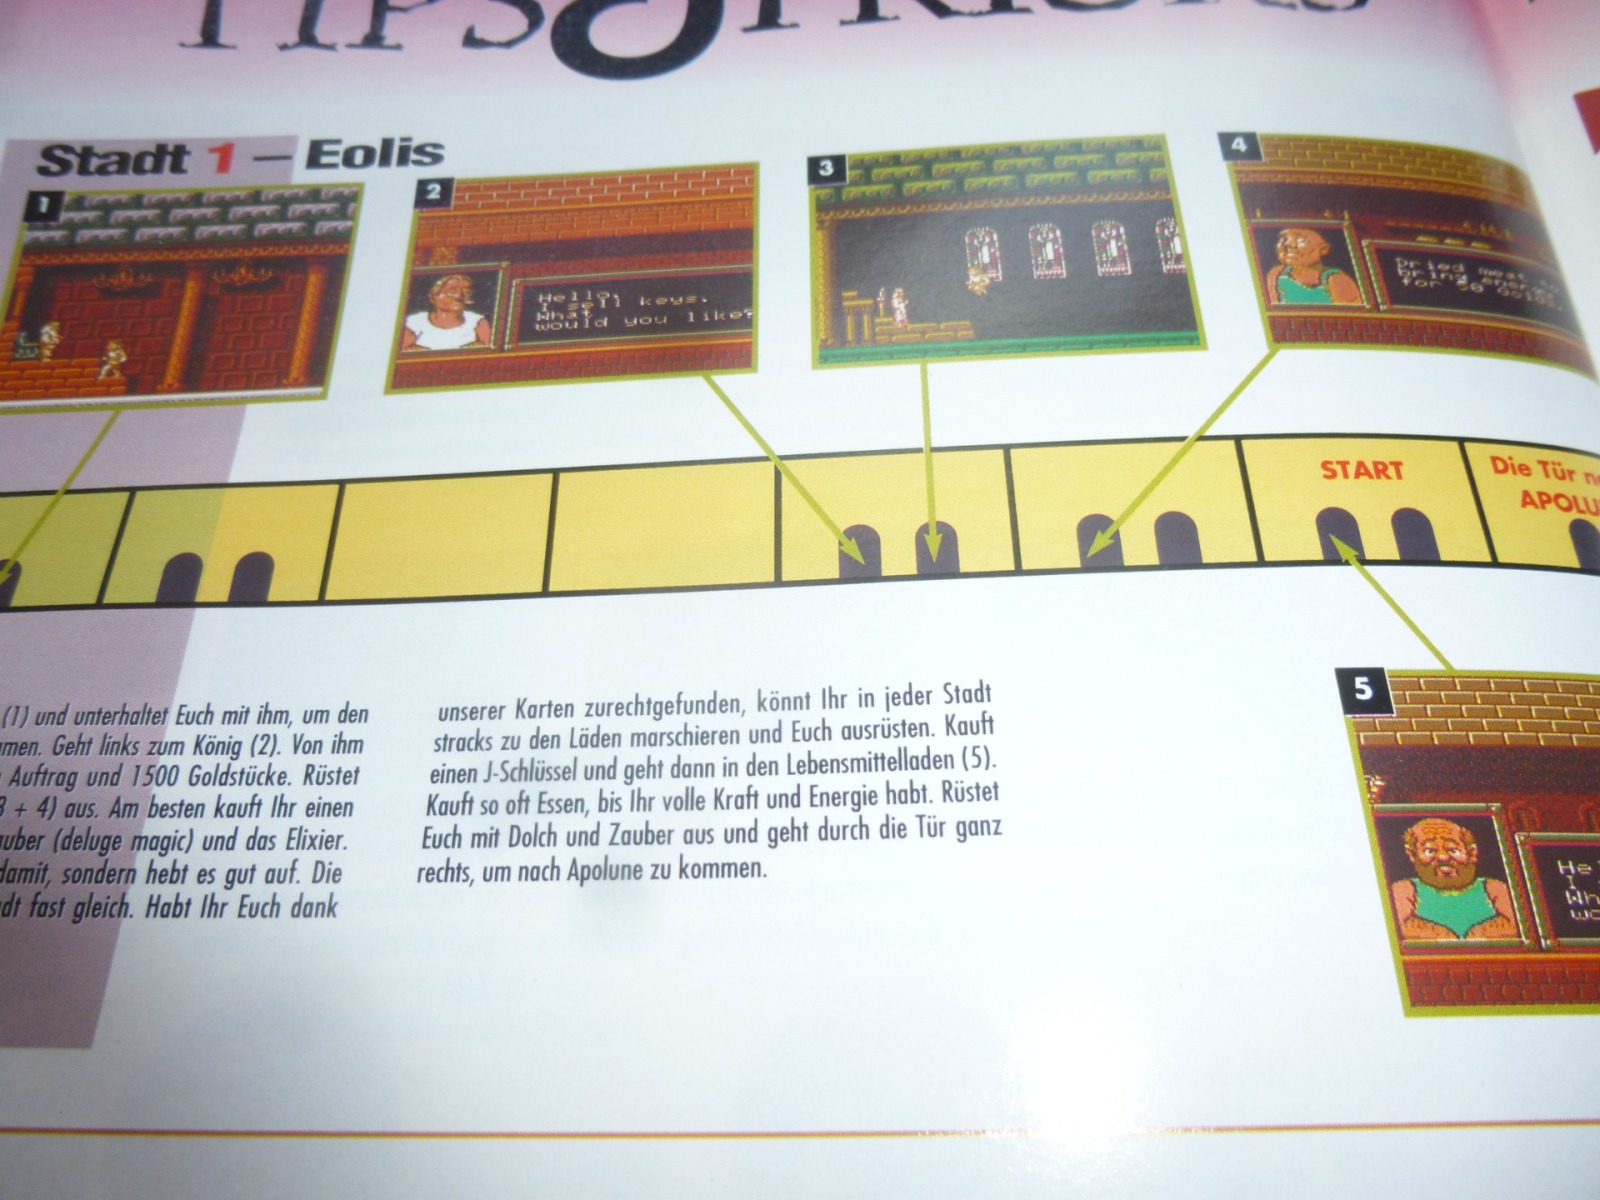 TOTAL Das unabhängige Magazin - 100 Nintendo - Ausgabe 7/93 1993 30